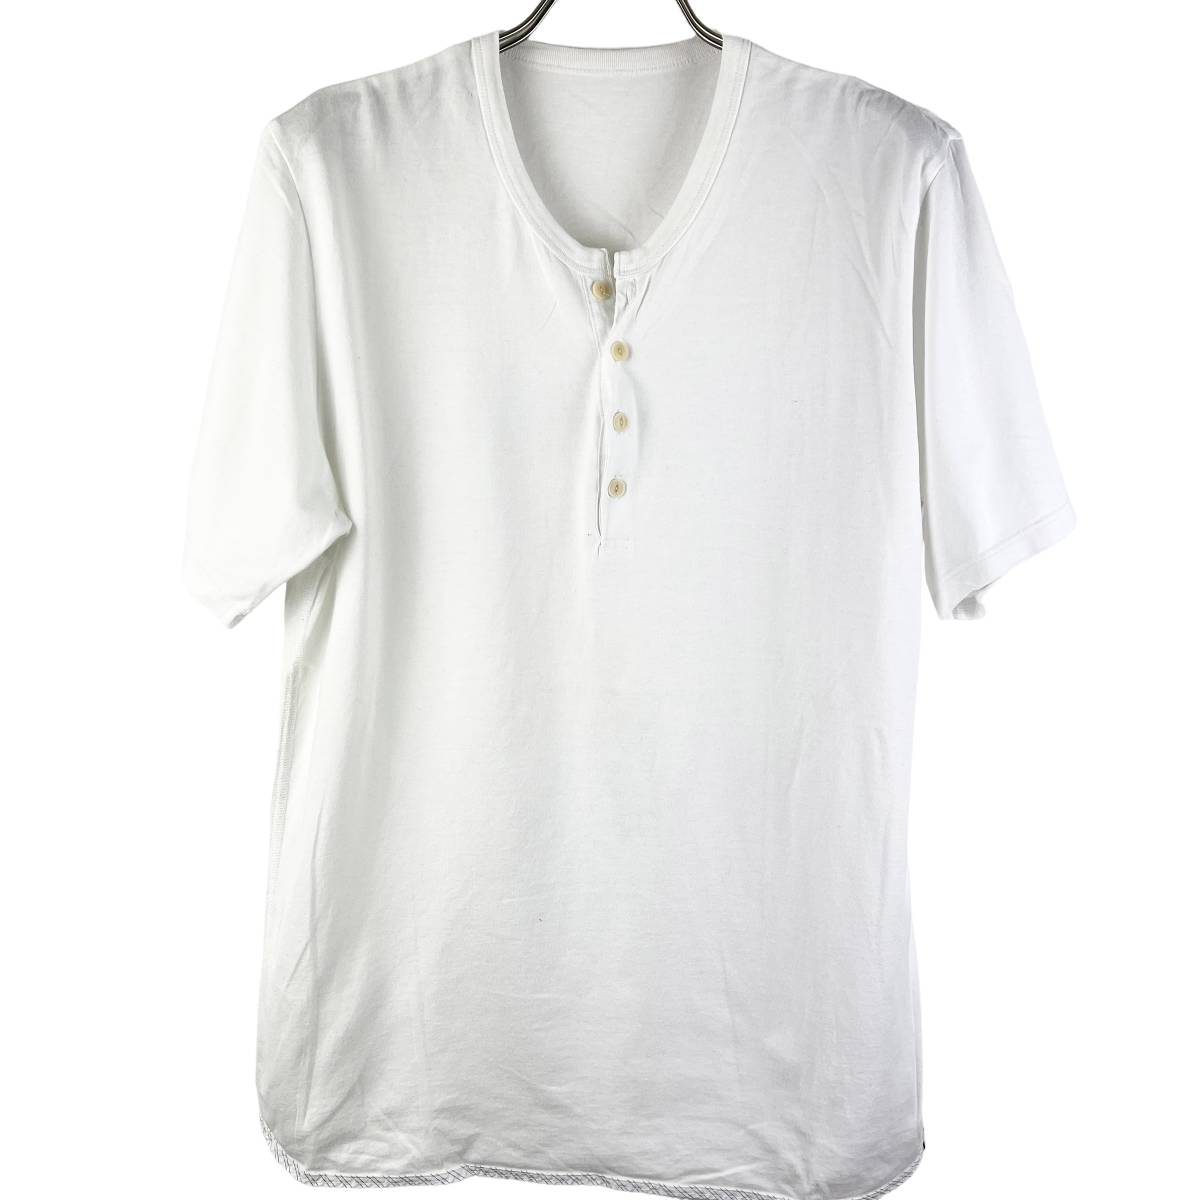 VISVIM(ビズビム) Collarless Bottom Cotton T Shirt (white) 3